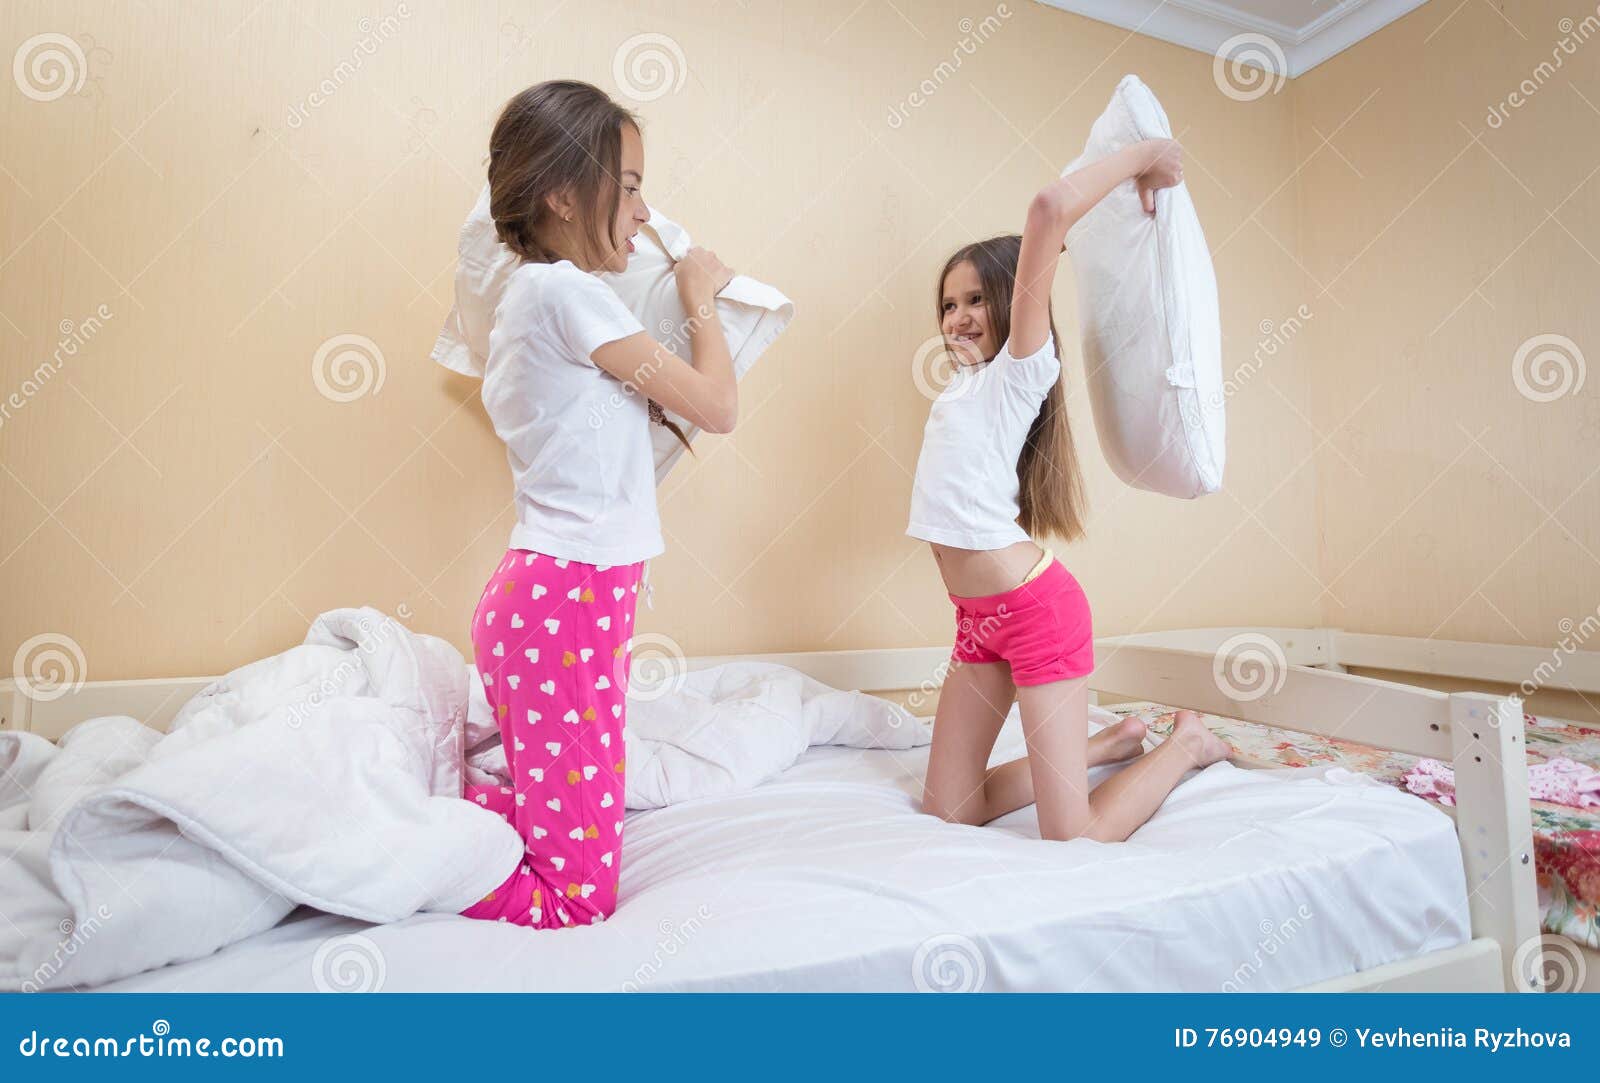 Пришел к сестре в постель. Сестры в пижамах кровать. Пижама для подростка девочки. Сестра в пижаме. Кровать для девочки 12 лет.